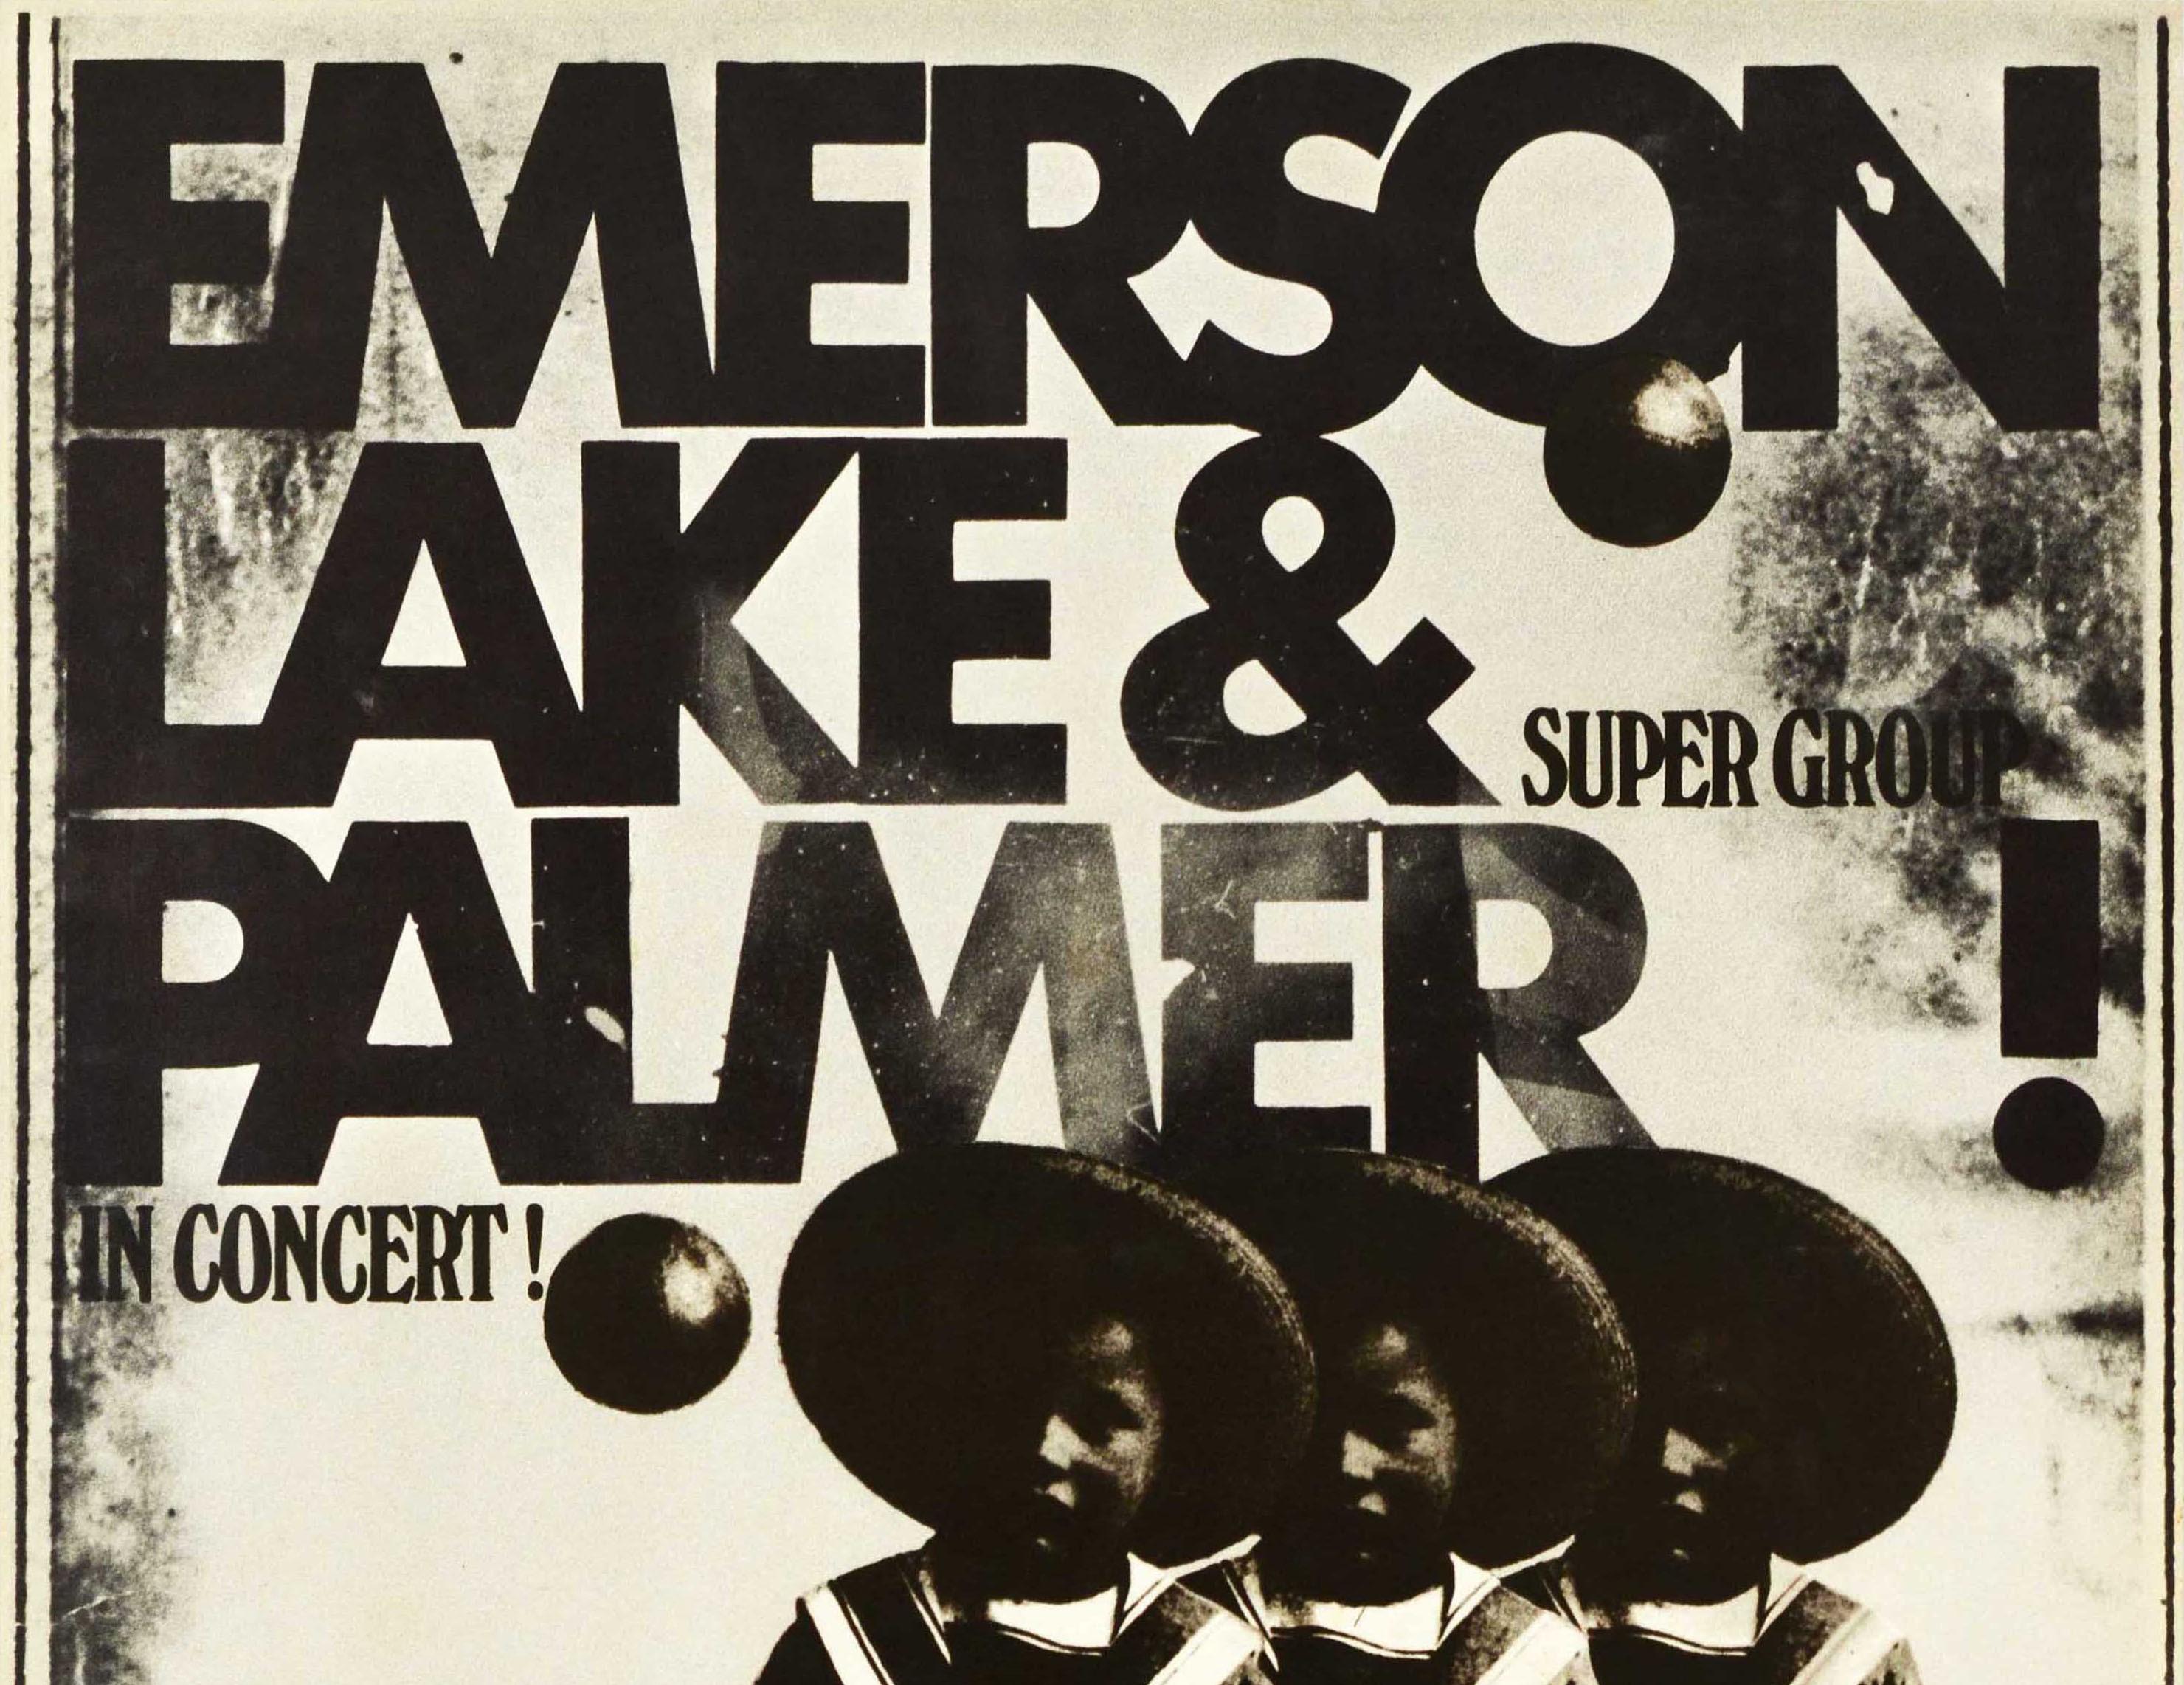 Affiche musicale vintage originale pour Emerson Lake & Palmer Super Group in Concert Keith Greg & Carl comportant le texte noir en gras au-dessus d'un dessin photographique montrant les trois membres du groupe anglais de rock progressif à succès